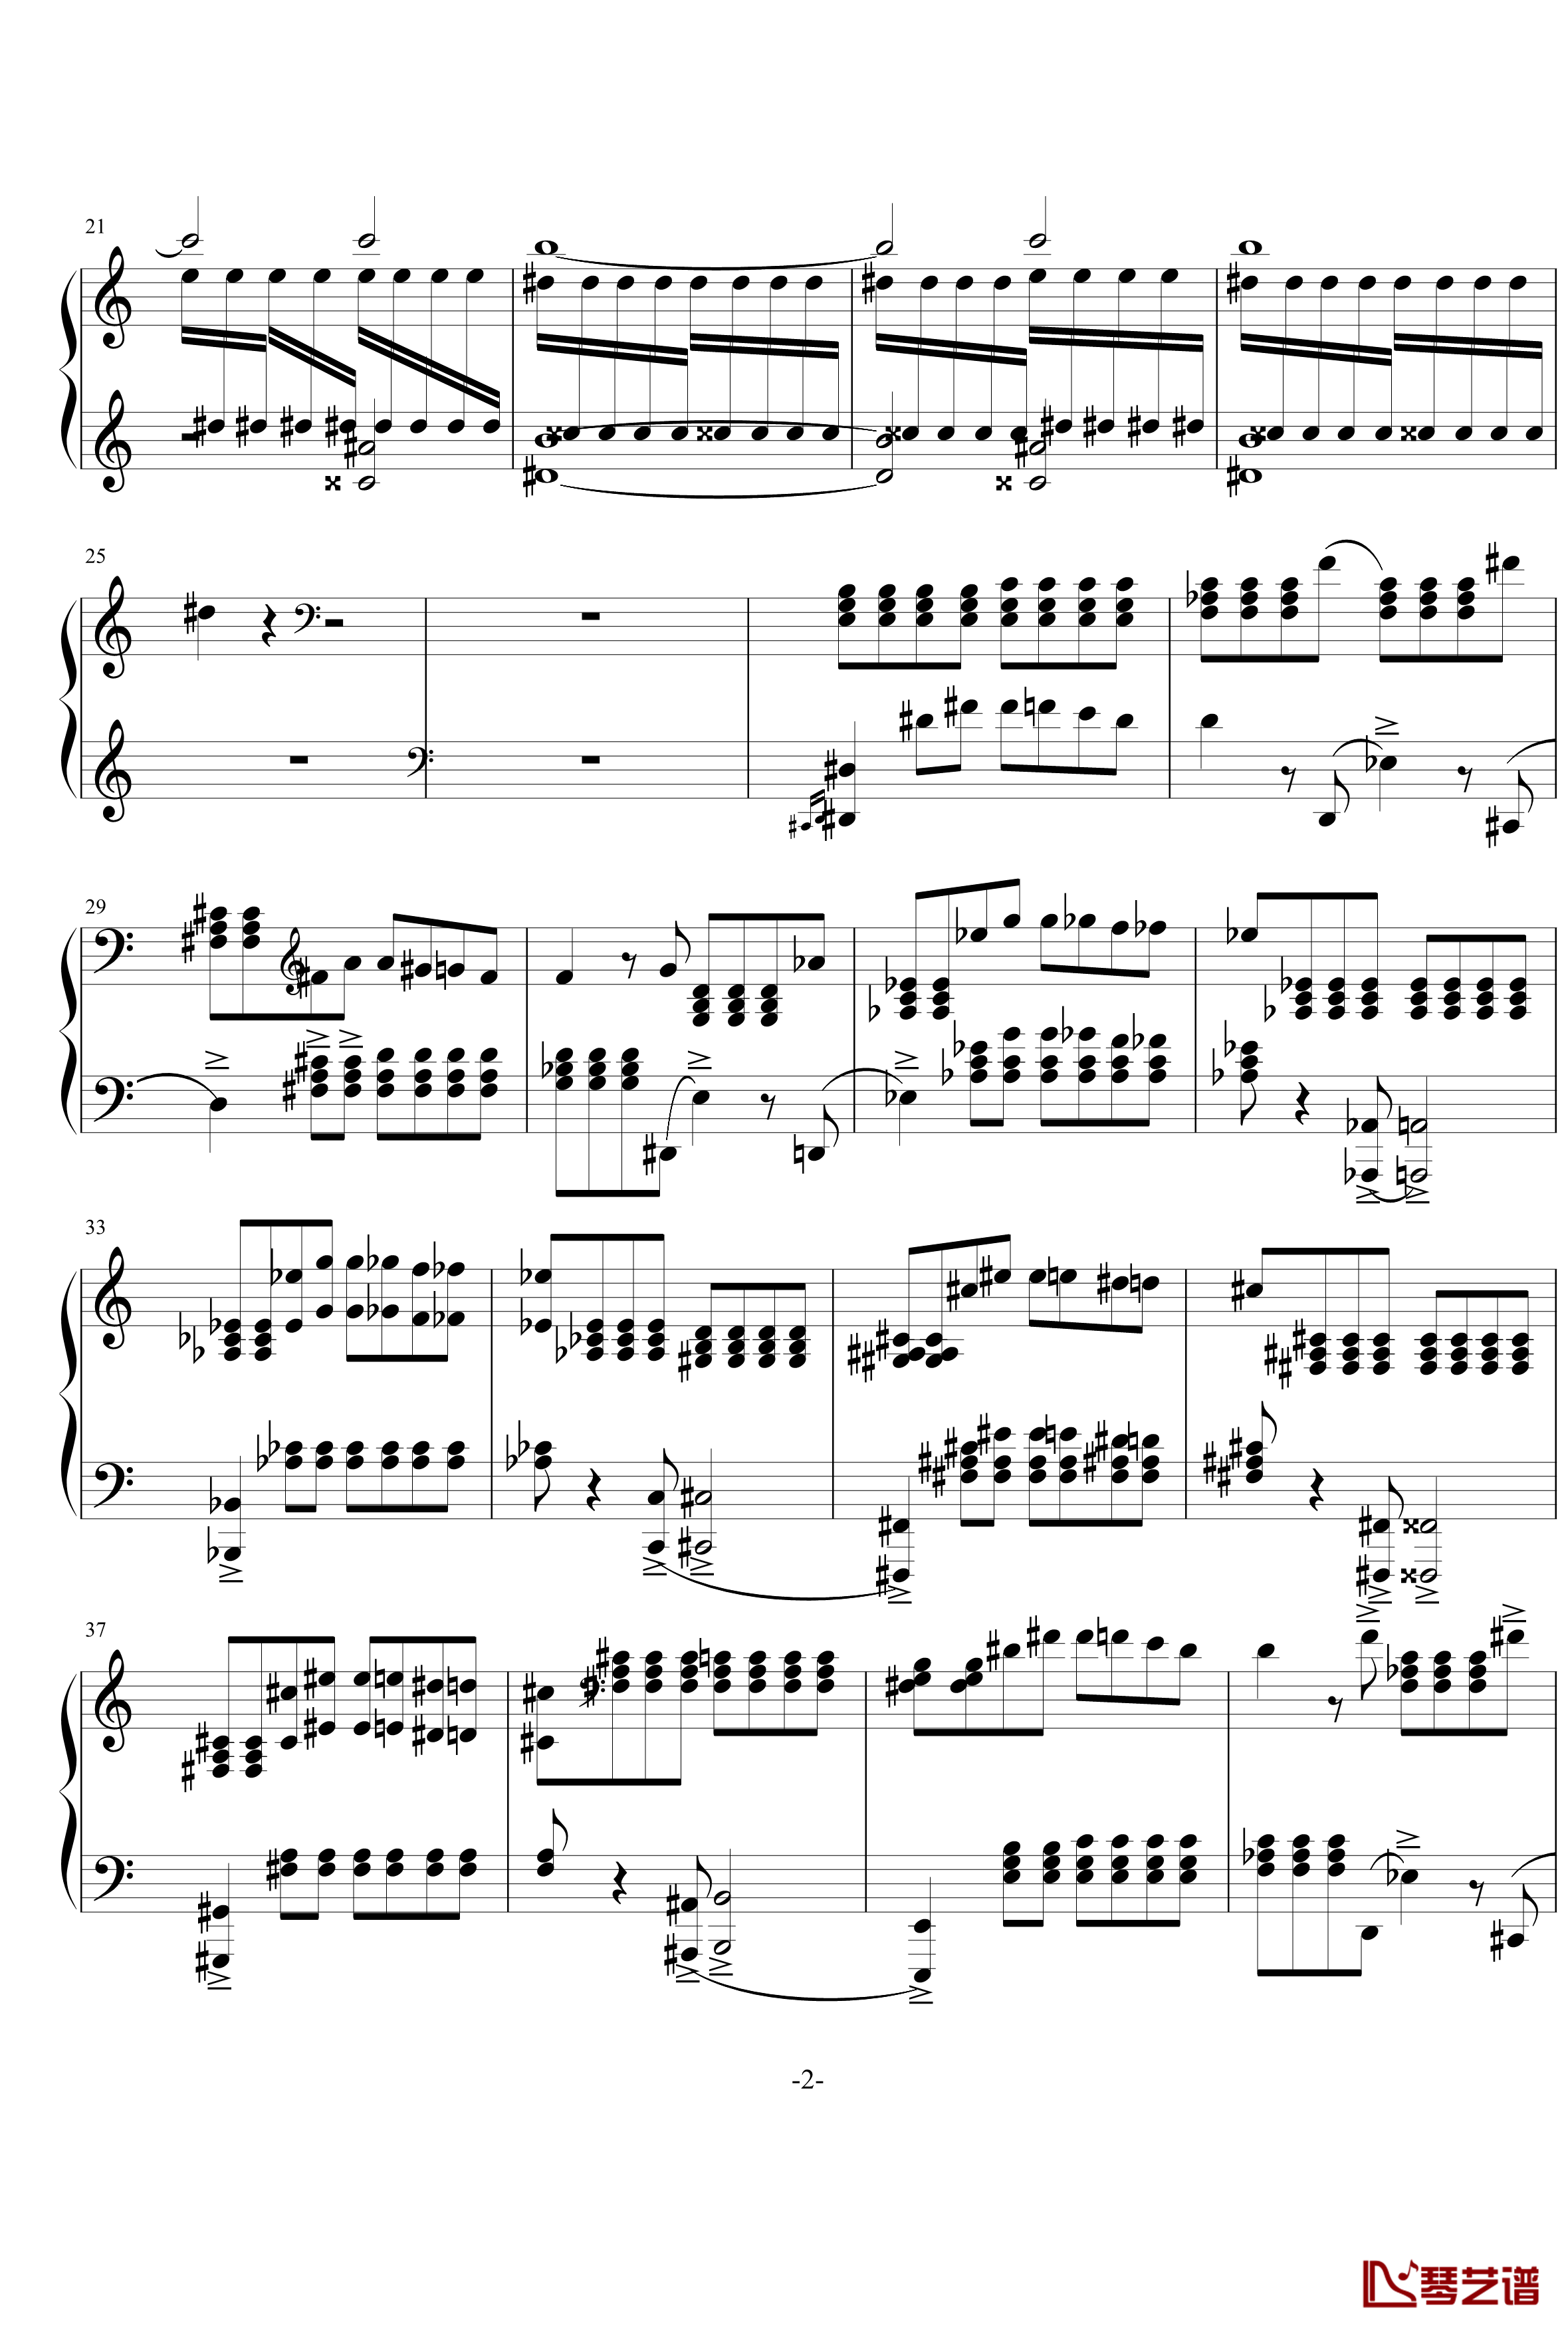 普罗科菲耶夫四首小品之四：魔鬼的诱惑钢琴谱-普罗科非耶夫2